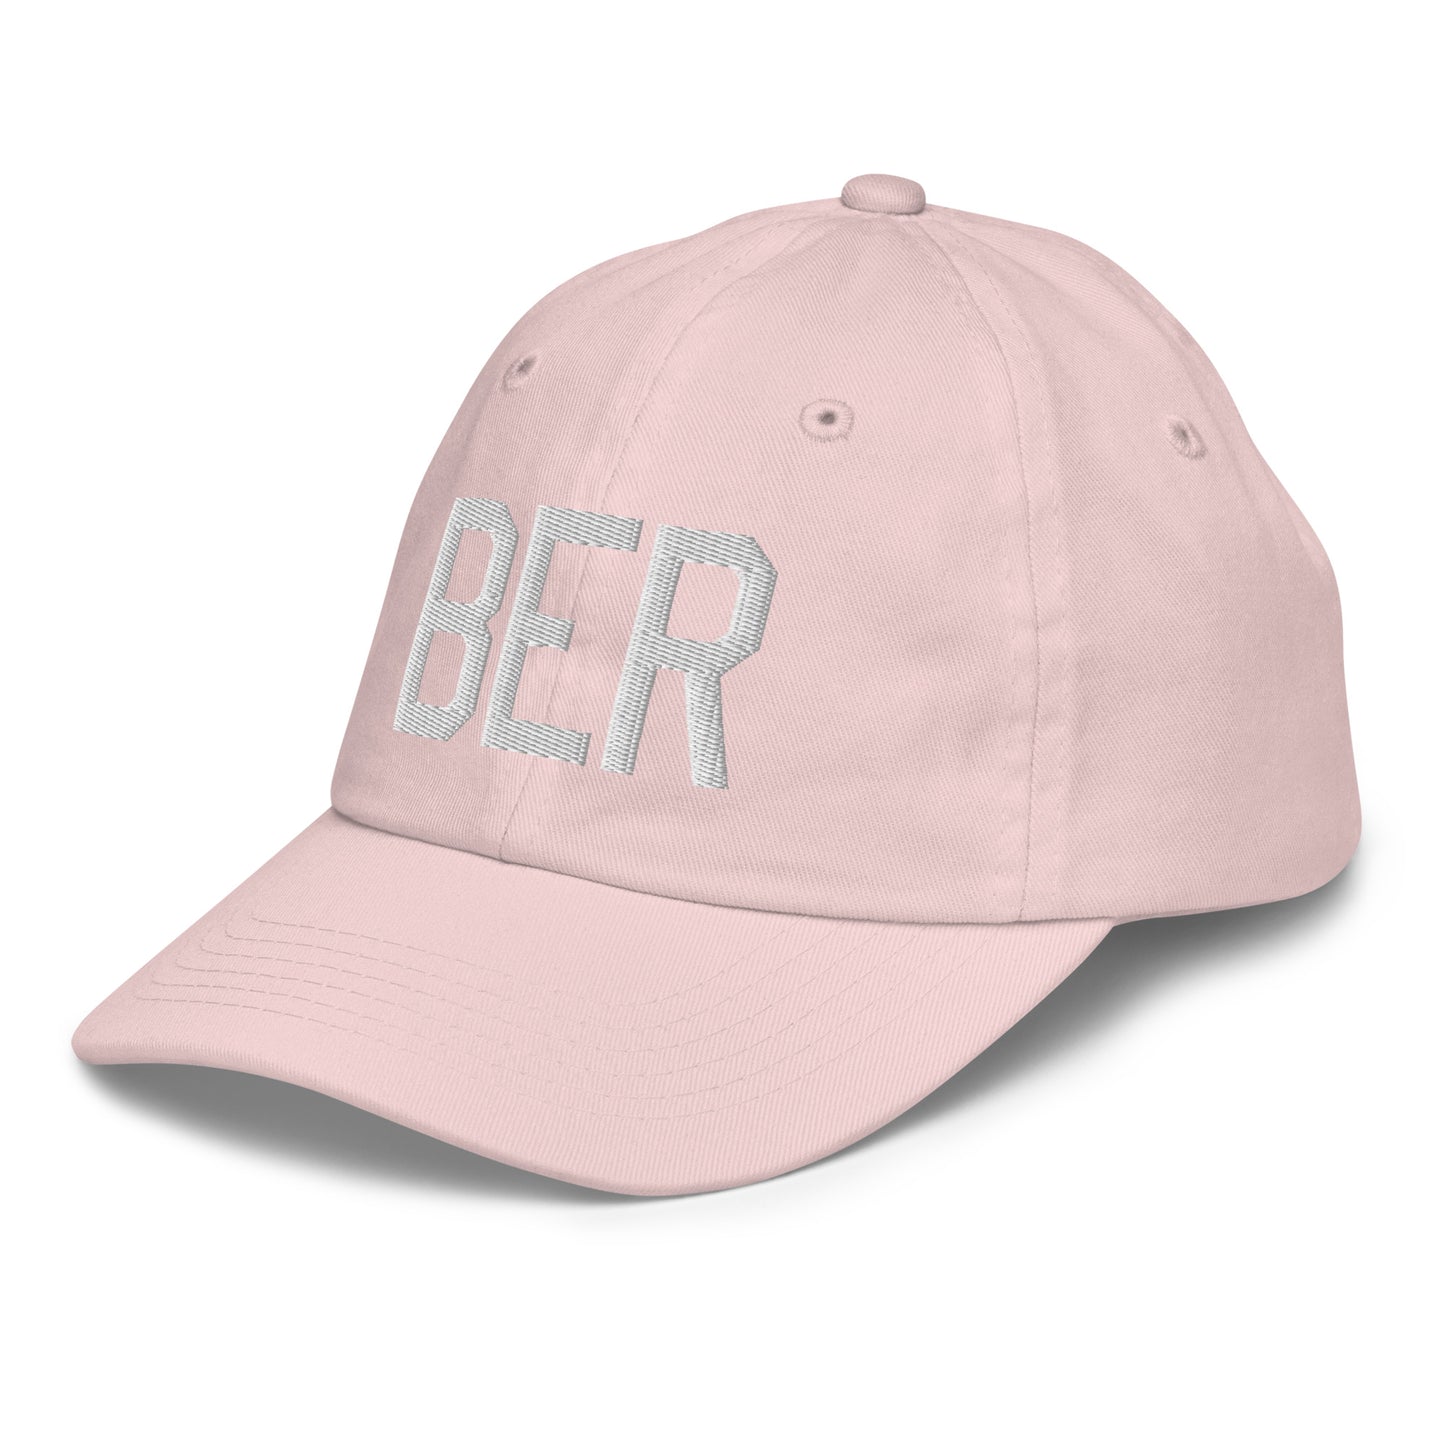 Airport Code Kid's Baseball Cap - White • BER Berlin • YHM Designs - Image 33